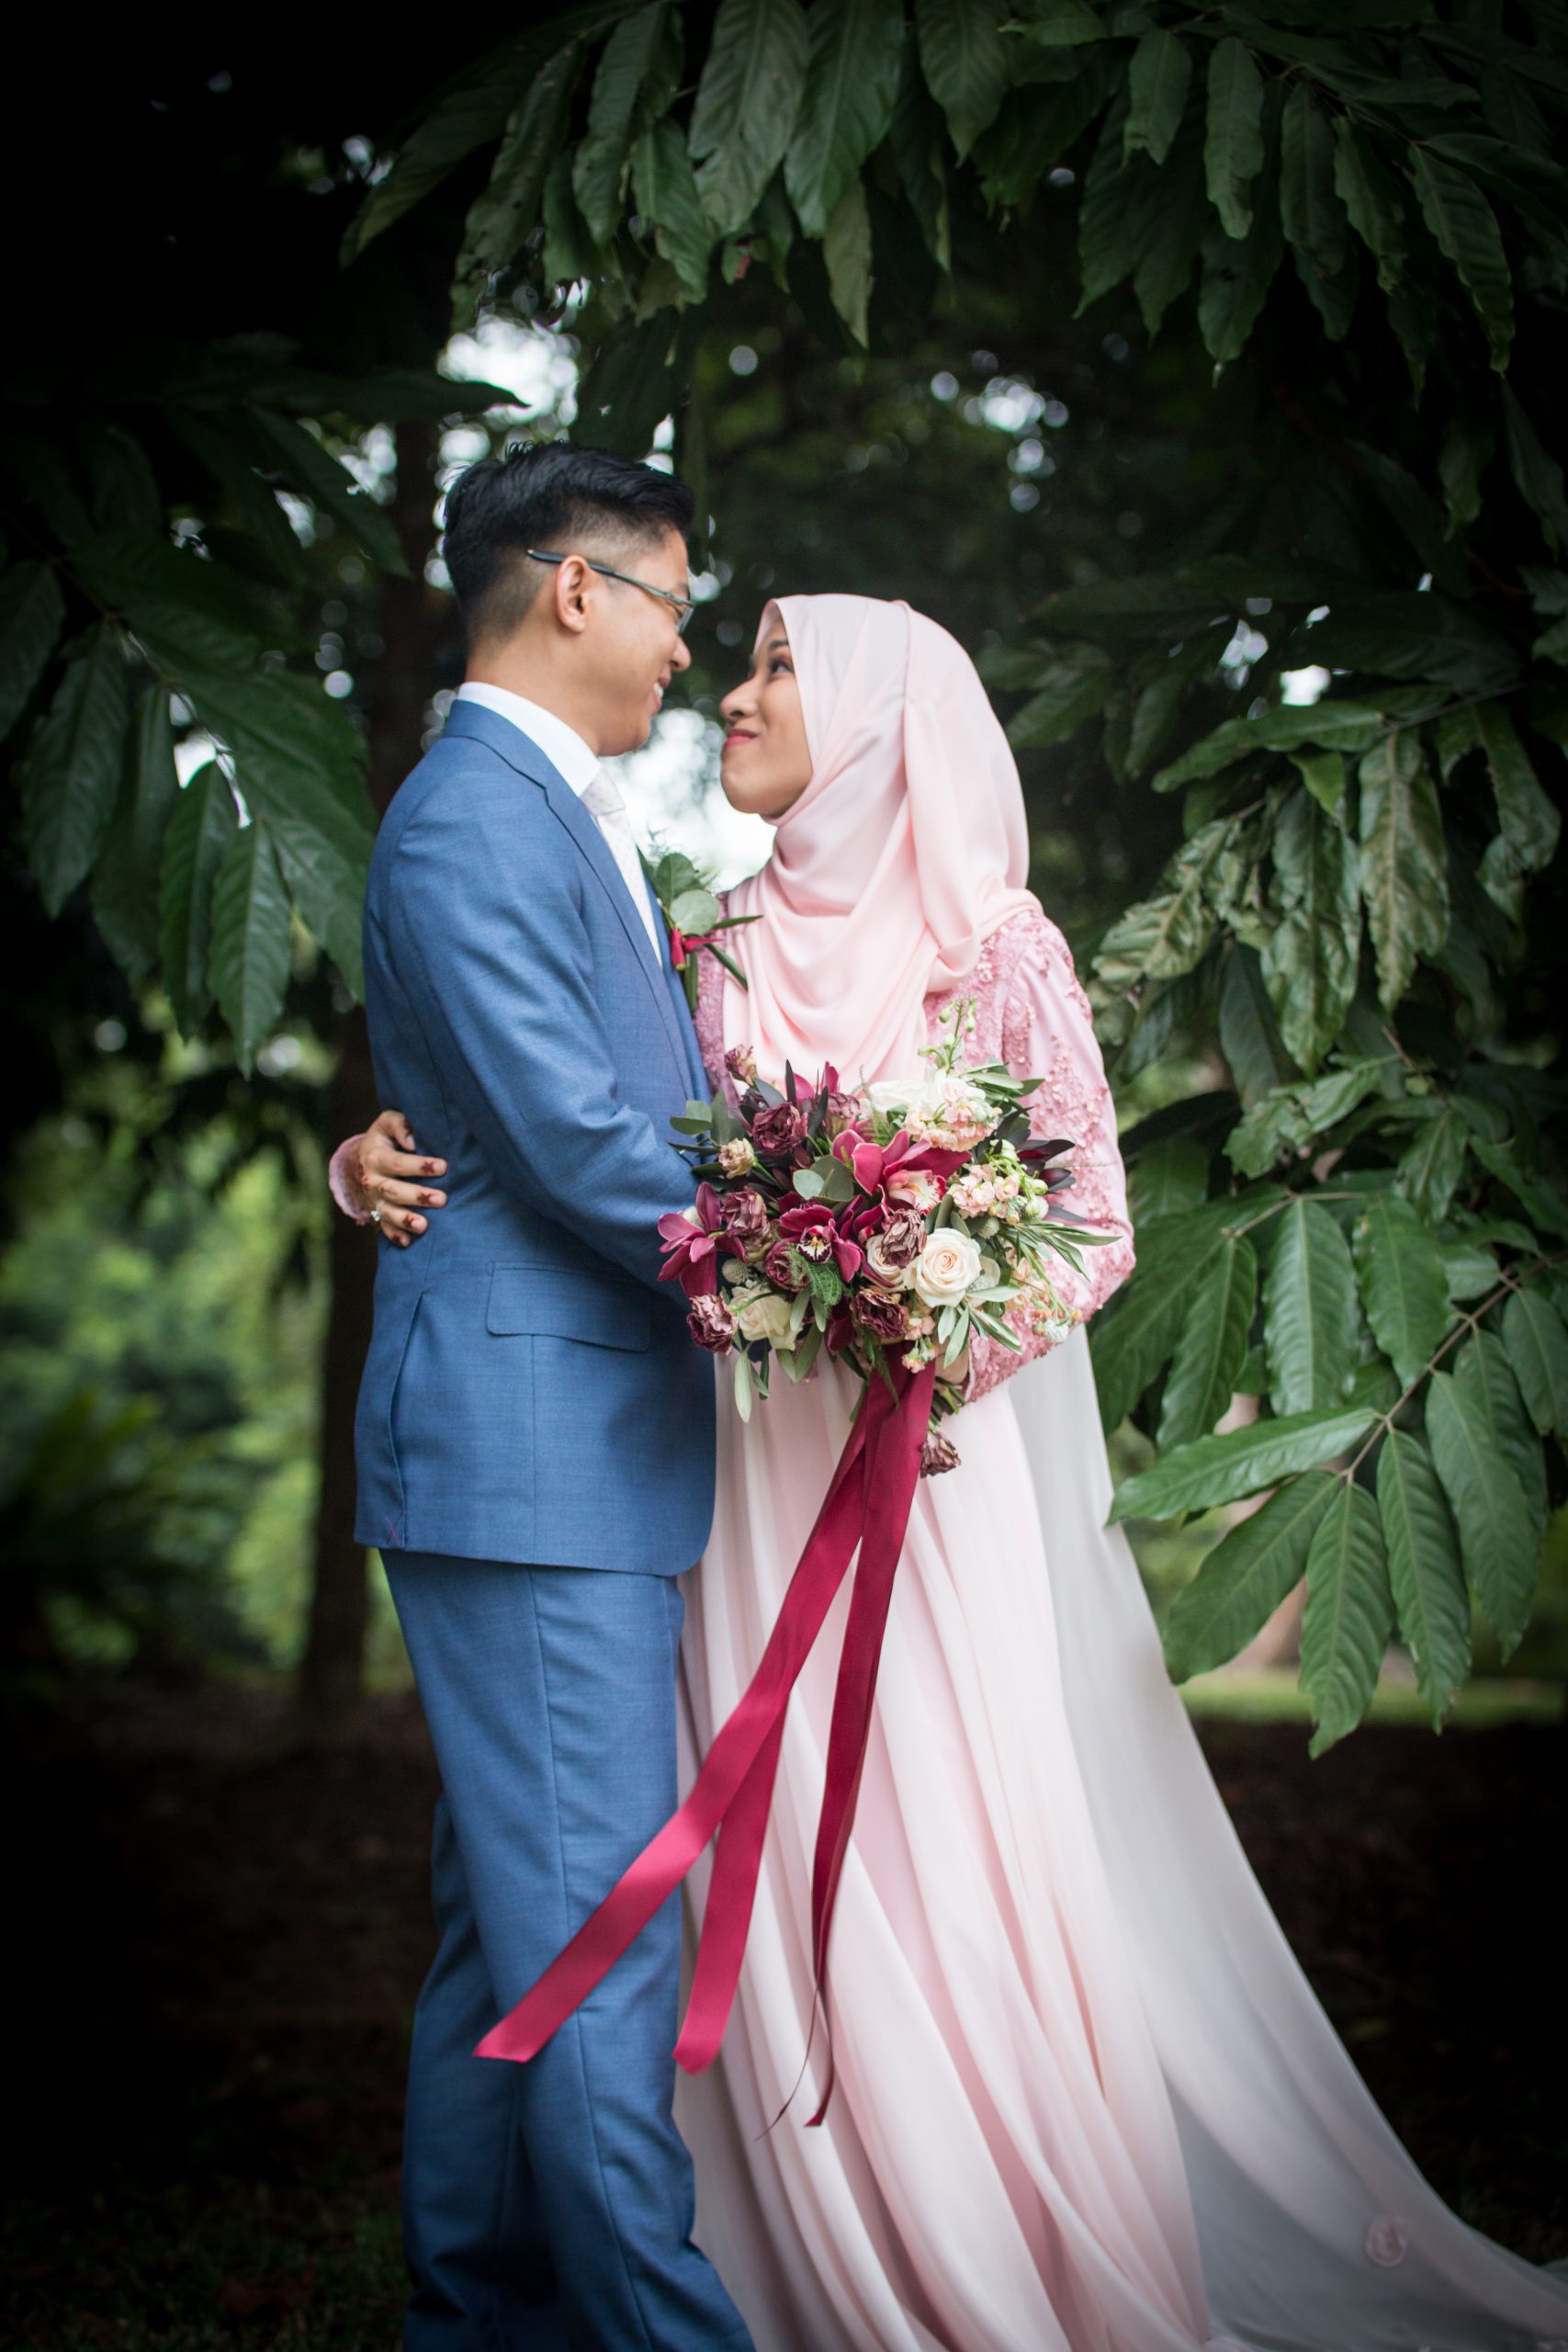 Syafiq_and_Filzah_Wedding2017_Photoshoot_87